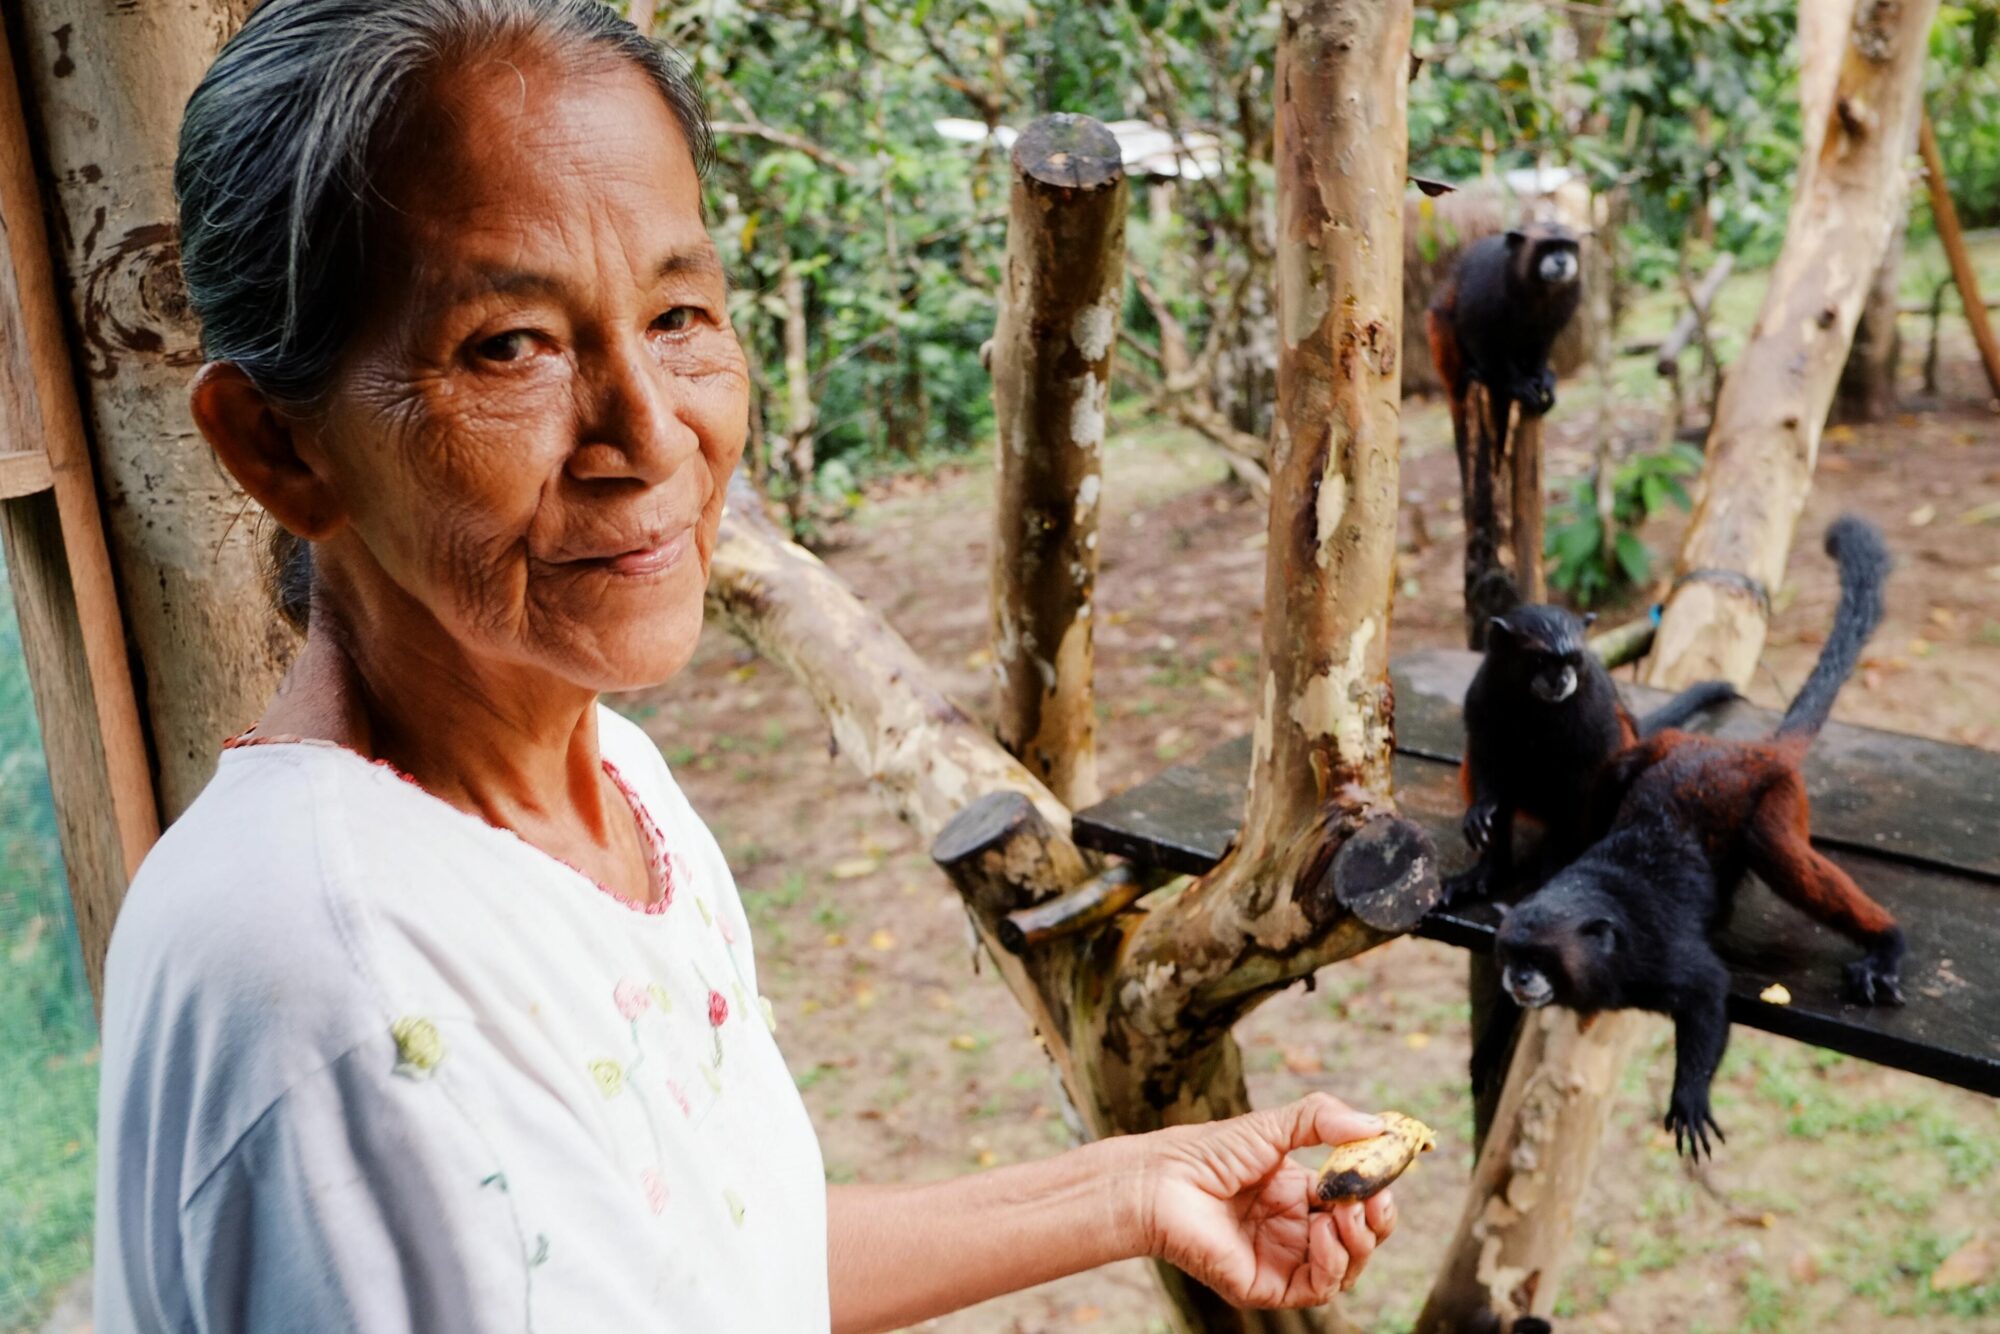 Um membro da tribo indígena Ticuna na Amazônia colombiana alimenta um macaco com bananas